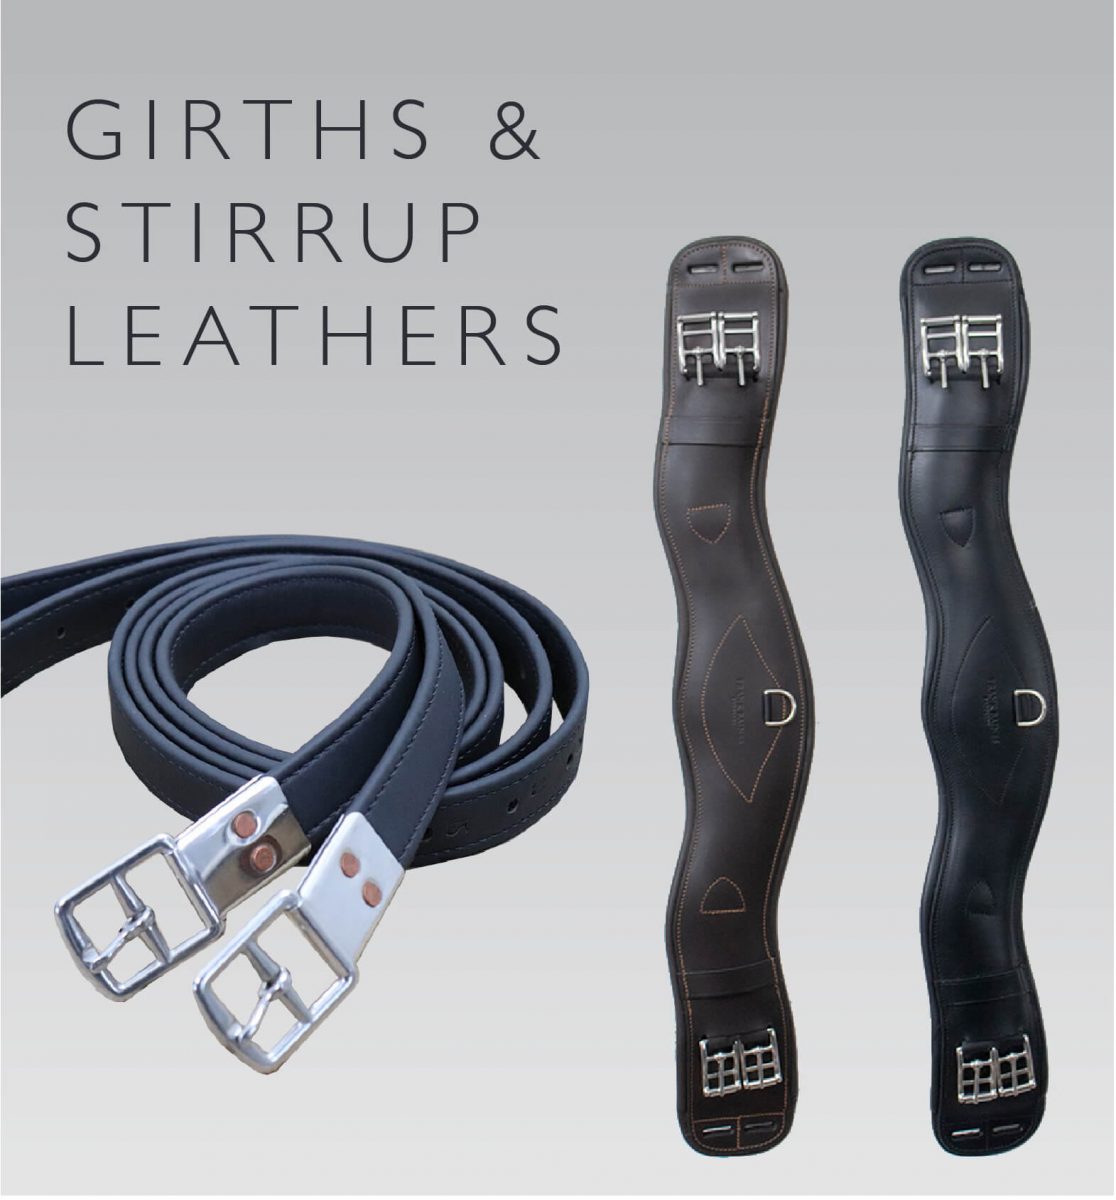 Girths & Stirrup Leathers